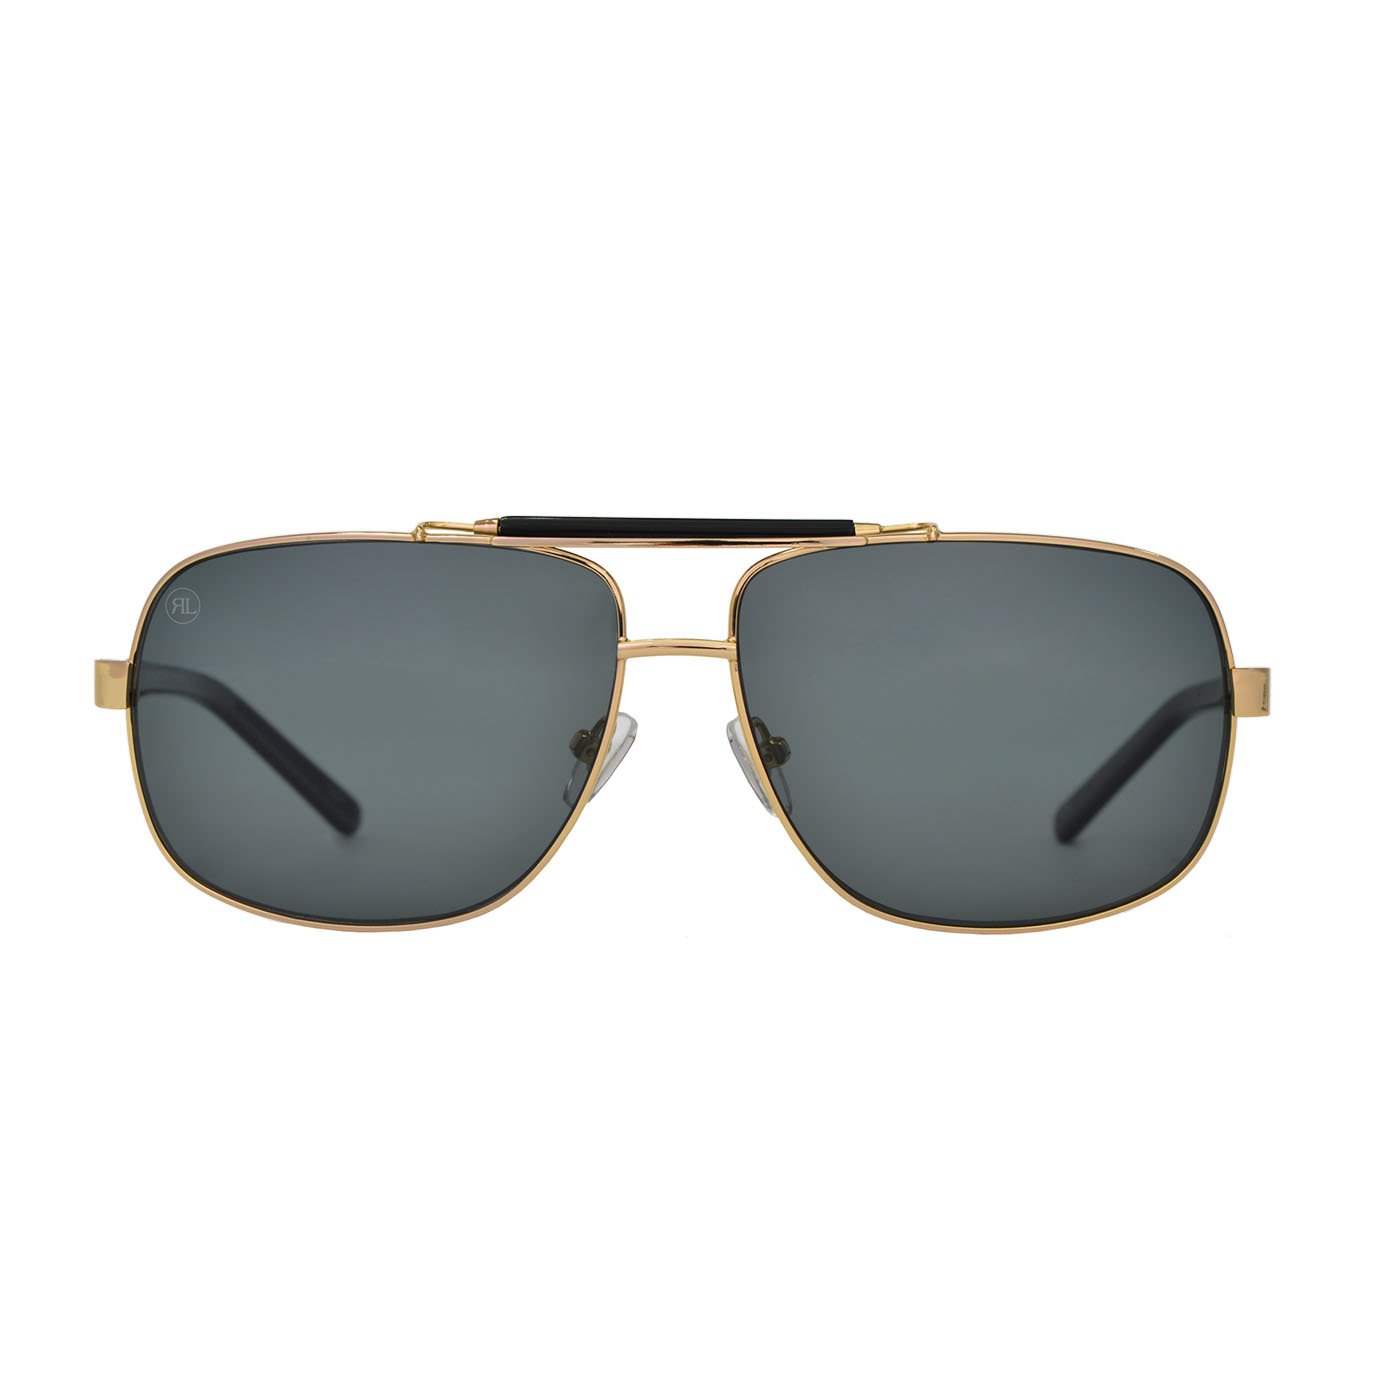 RENATO LANDINI Men's Sunglasses Black with Gold/ Sun Shield